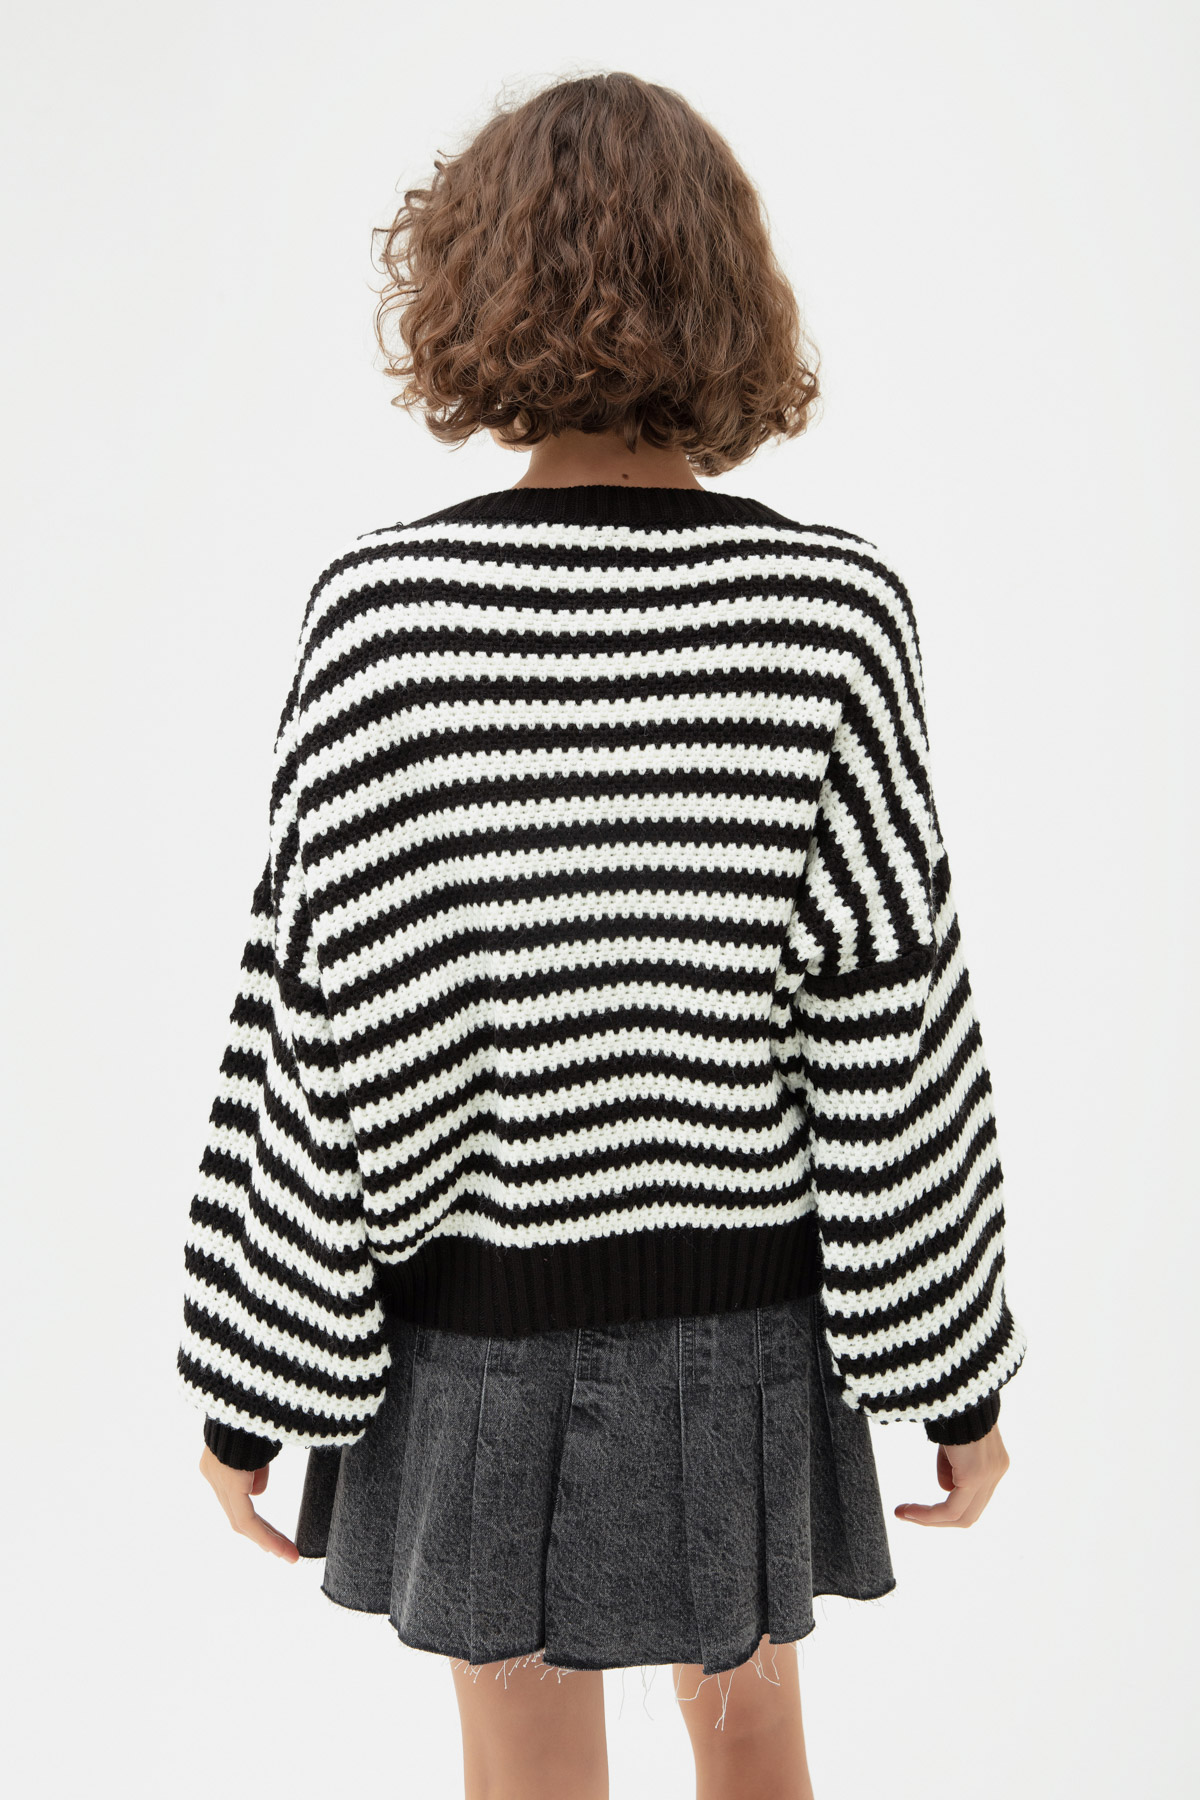 Women's Black Striped Knitwear Cardigan